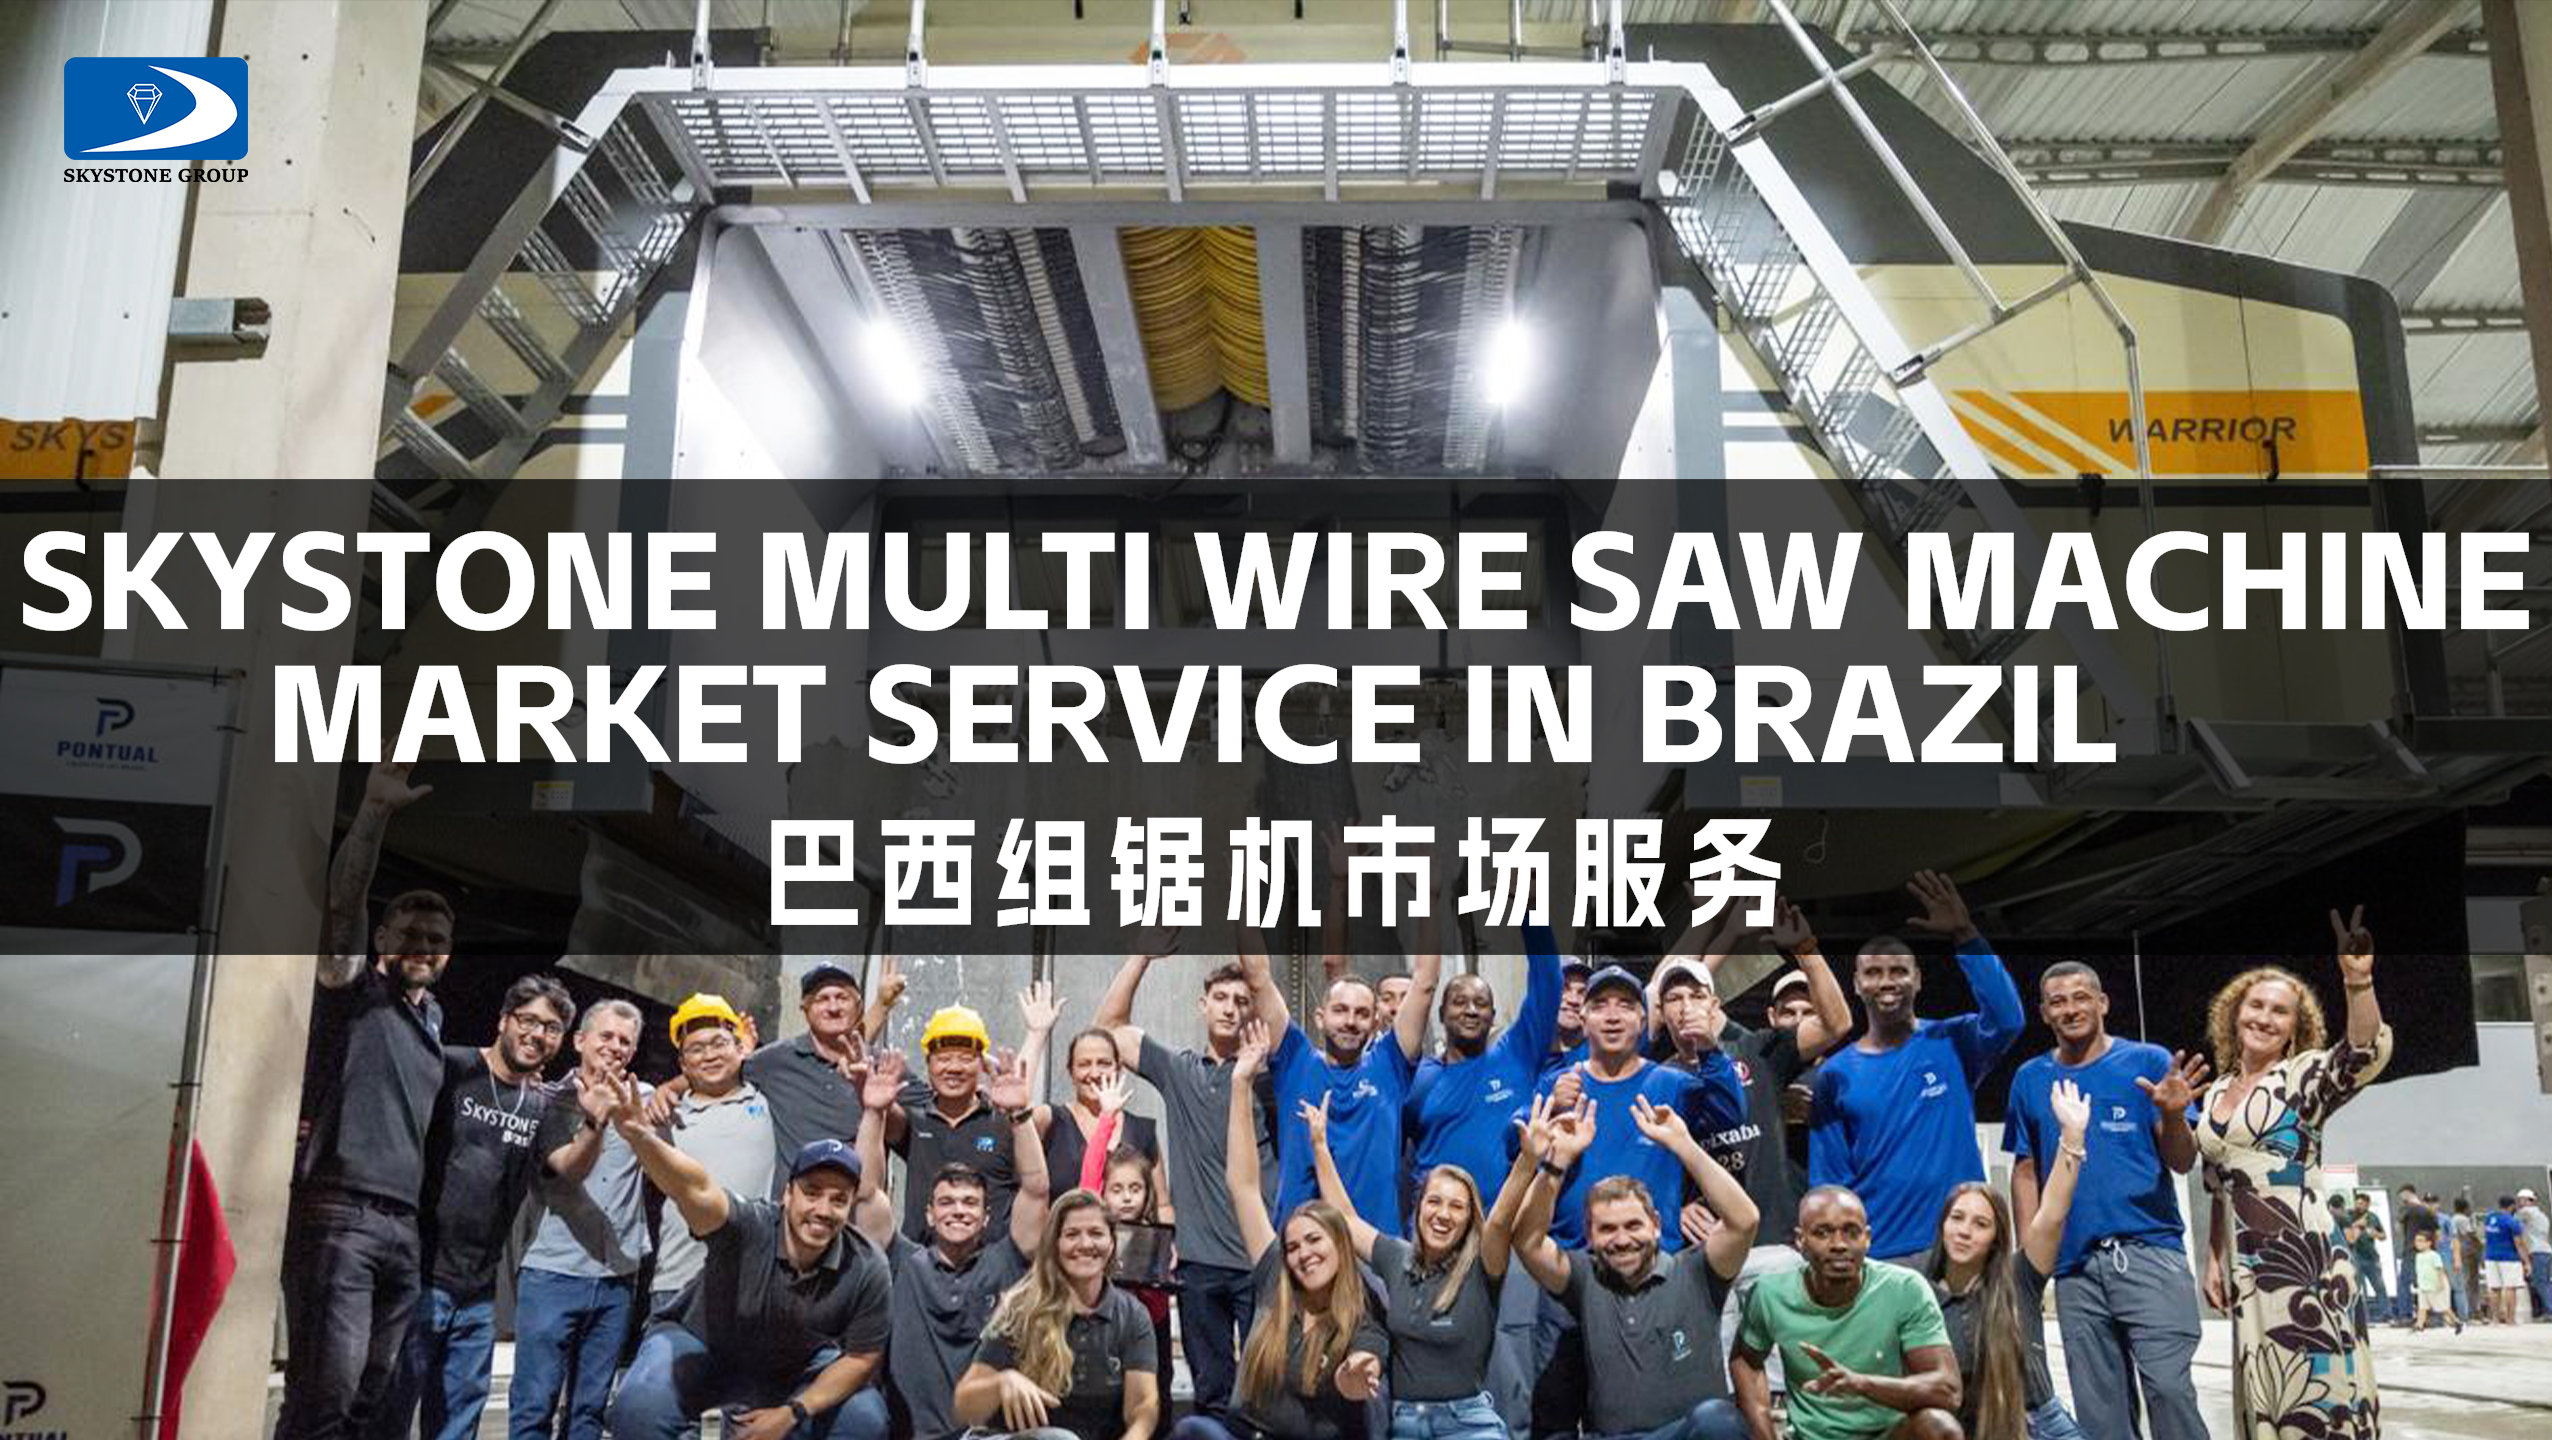 Skystone Multi Wire Saw Machine Market Service in Brazil